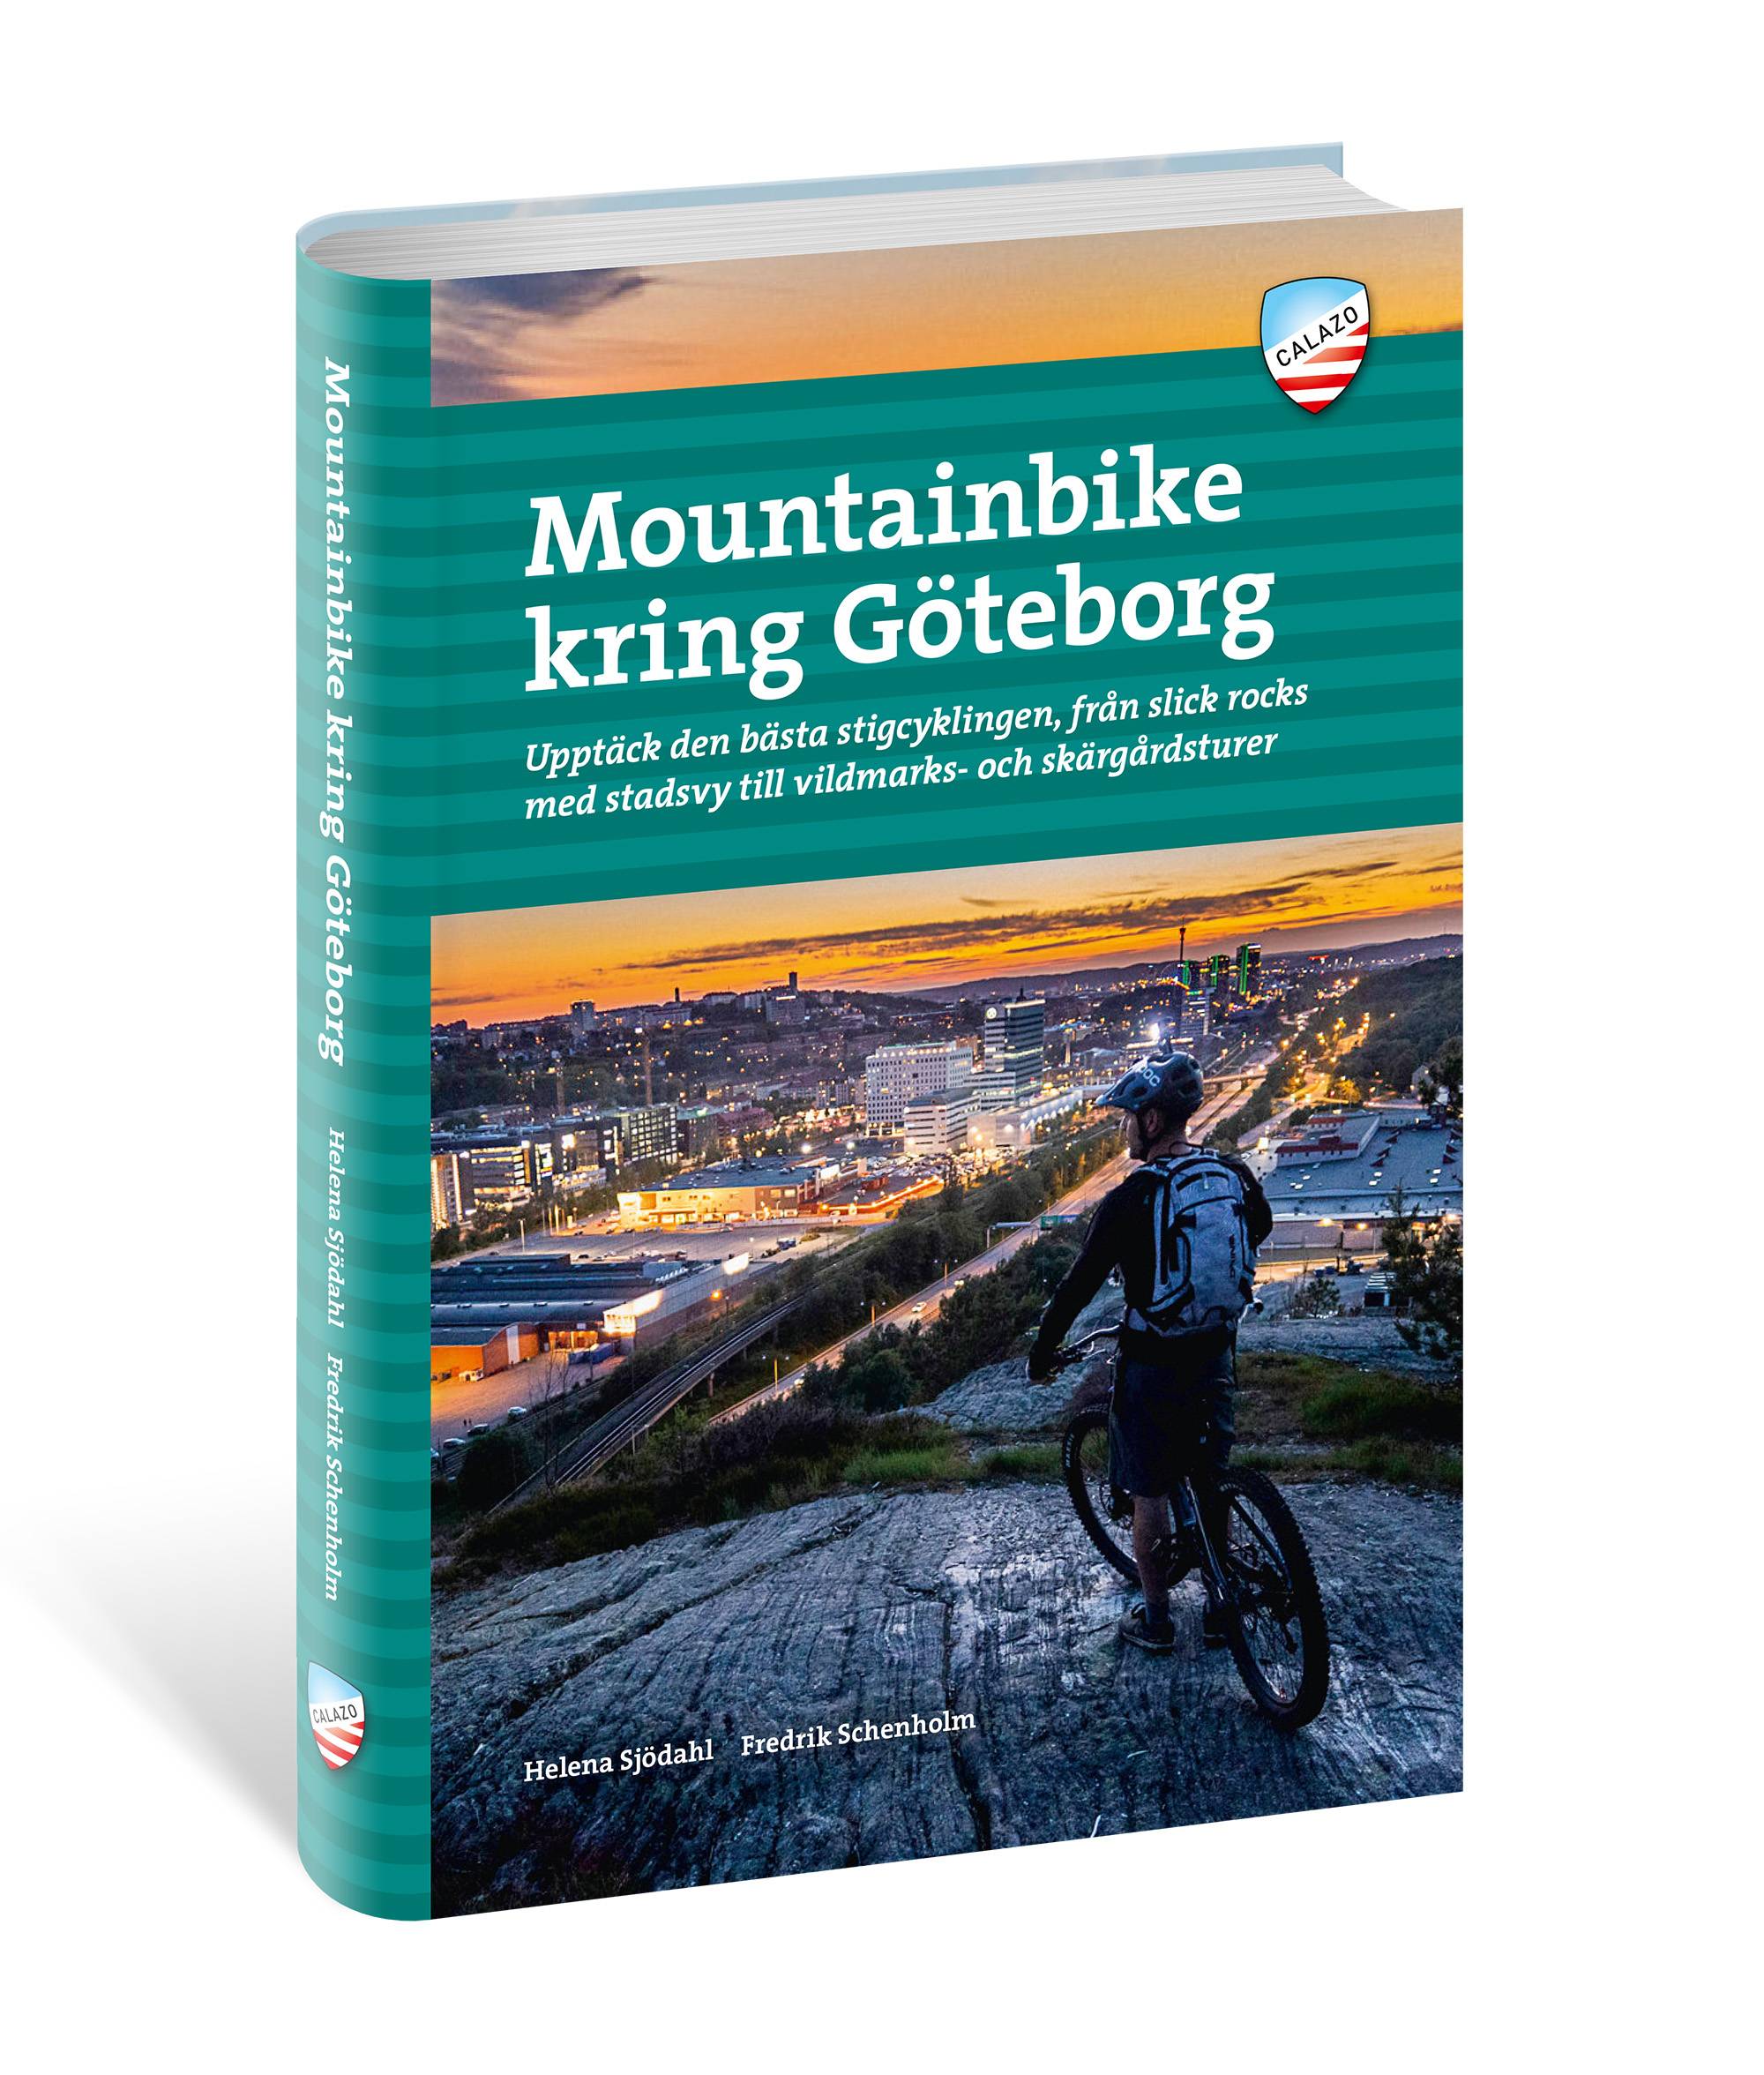 Mountainbike kring Göteborg : upptäck den bästa stigcyklingen - från branta endurospår till äventyrliga långturer